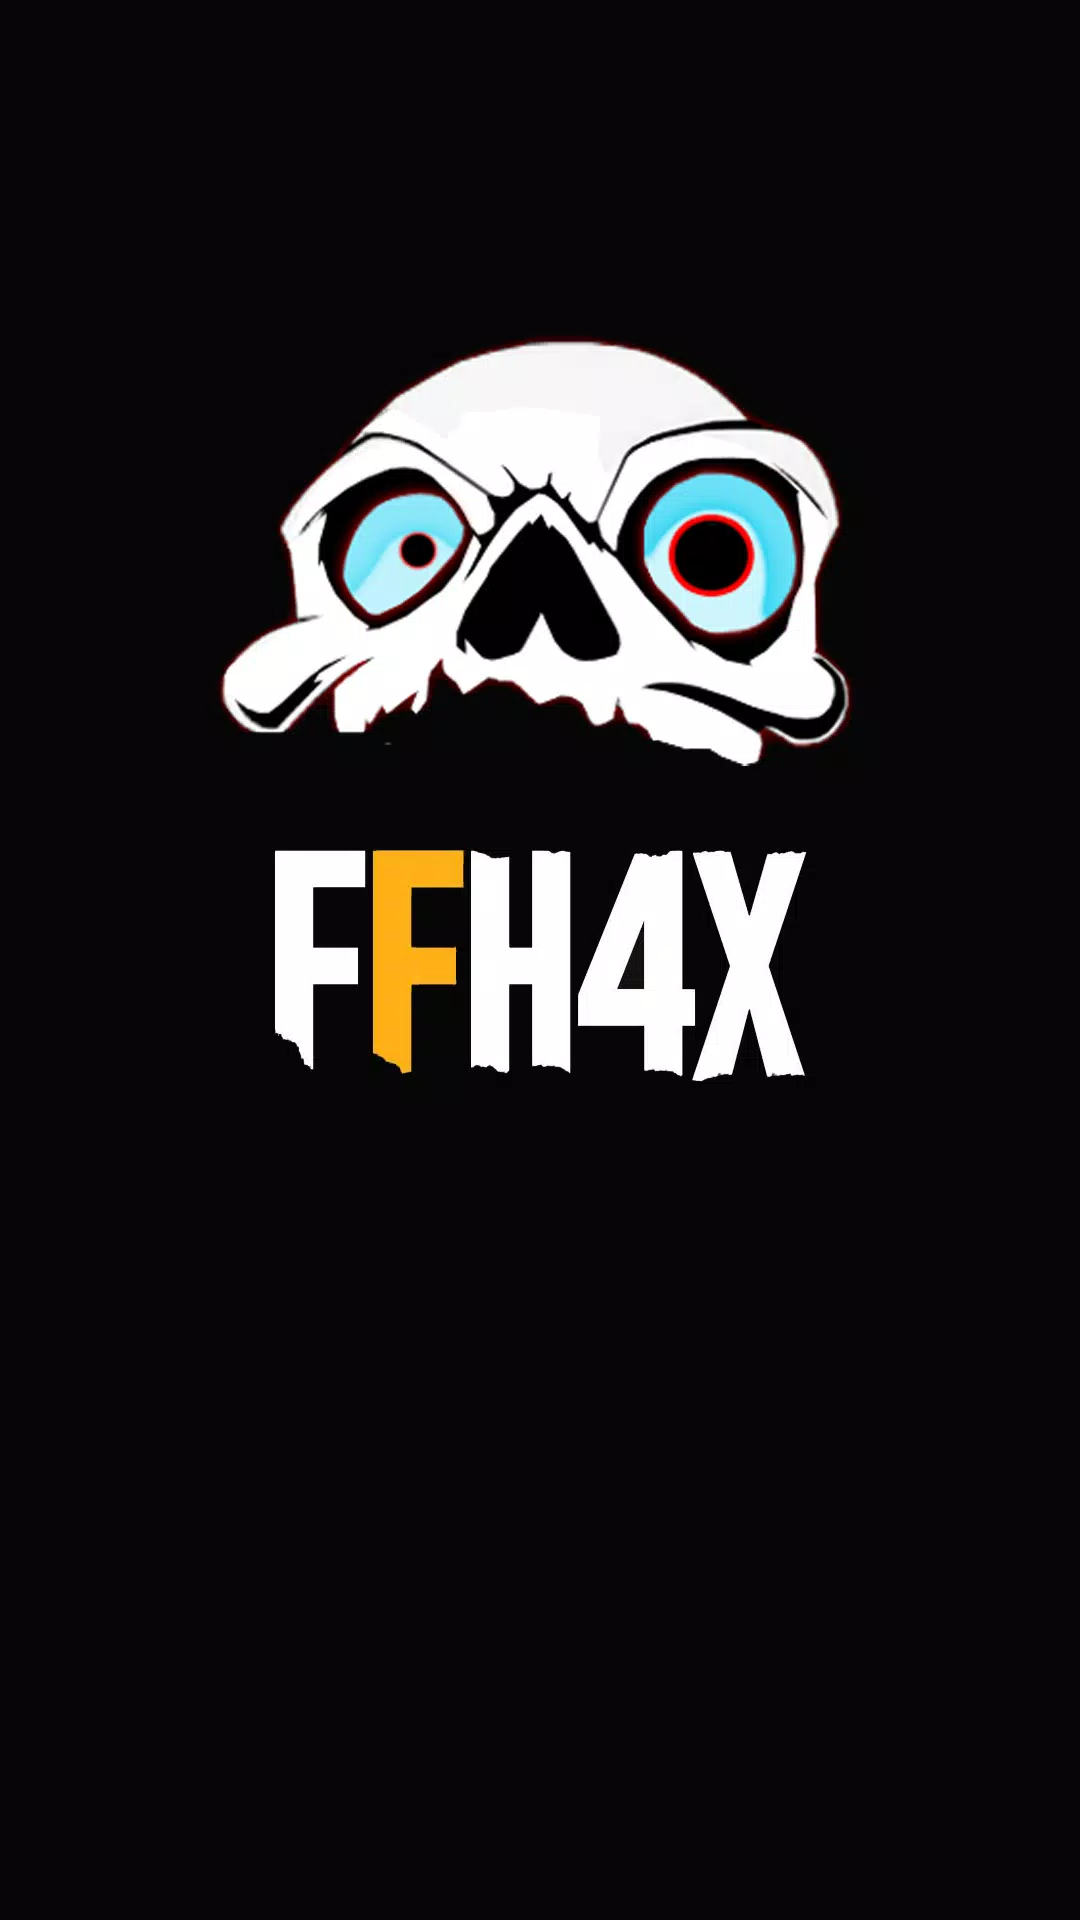 FF H4X